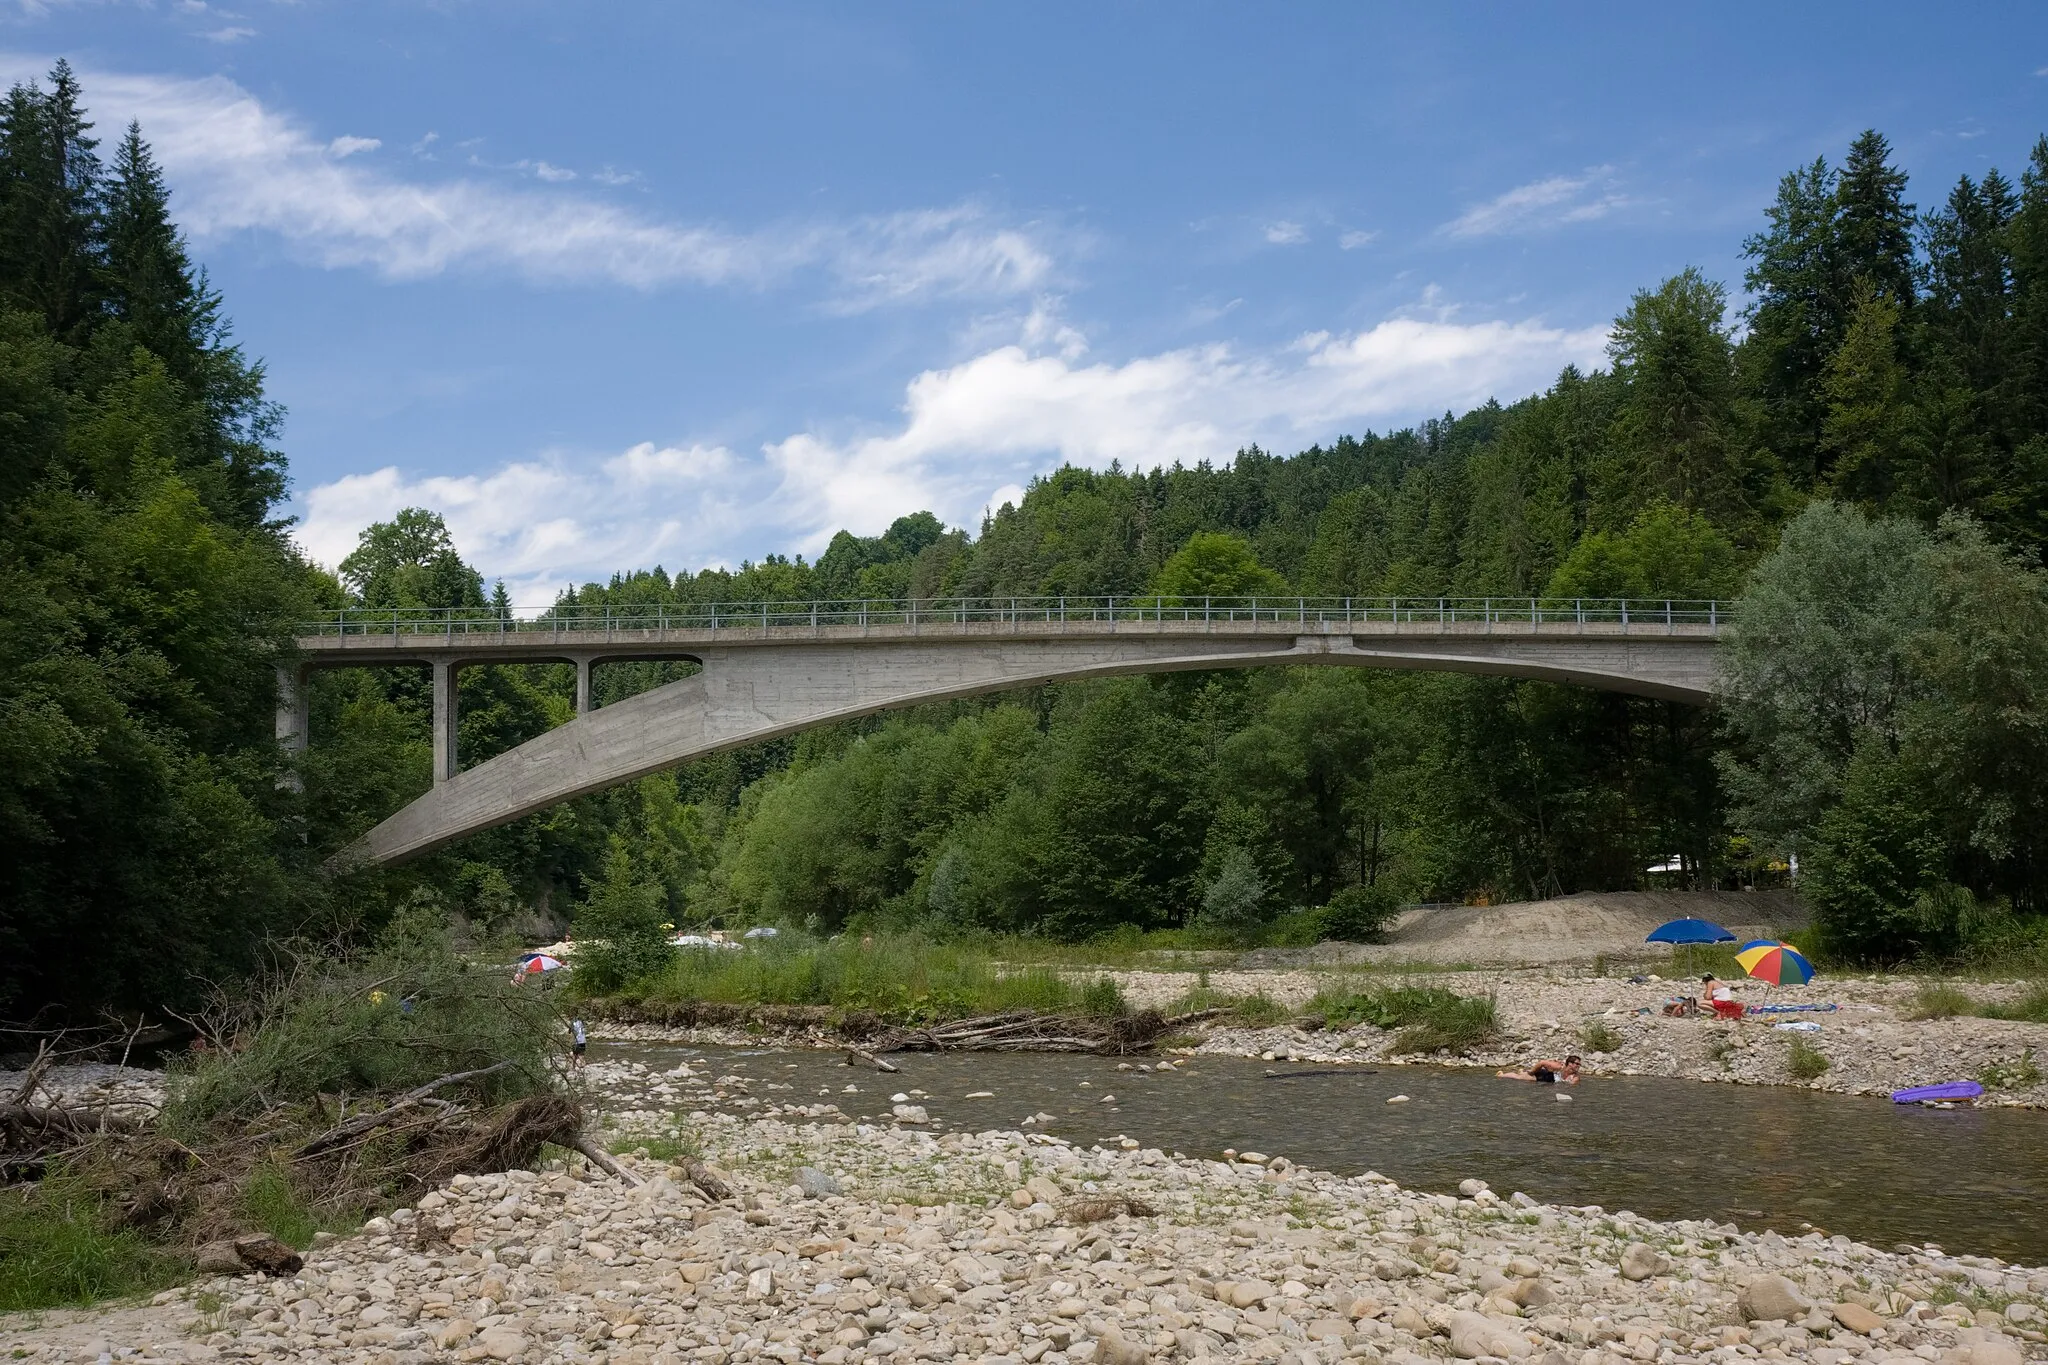 Photo showing: Die Rossgrabenbrücke von Robert Maillart in Hinterfultigen, Gemeinde Rüeggisberg, Schweiz erbaut 1932